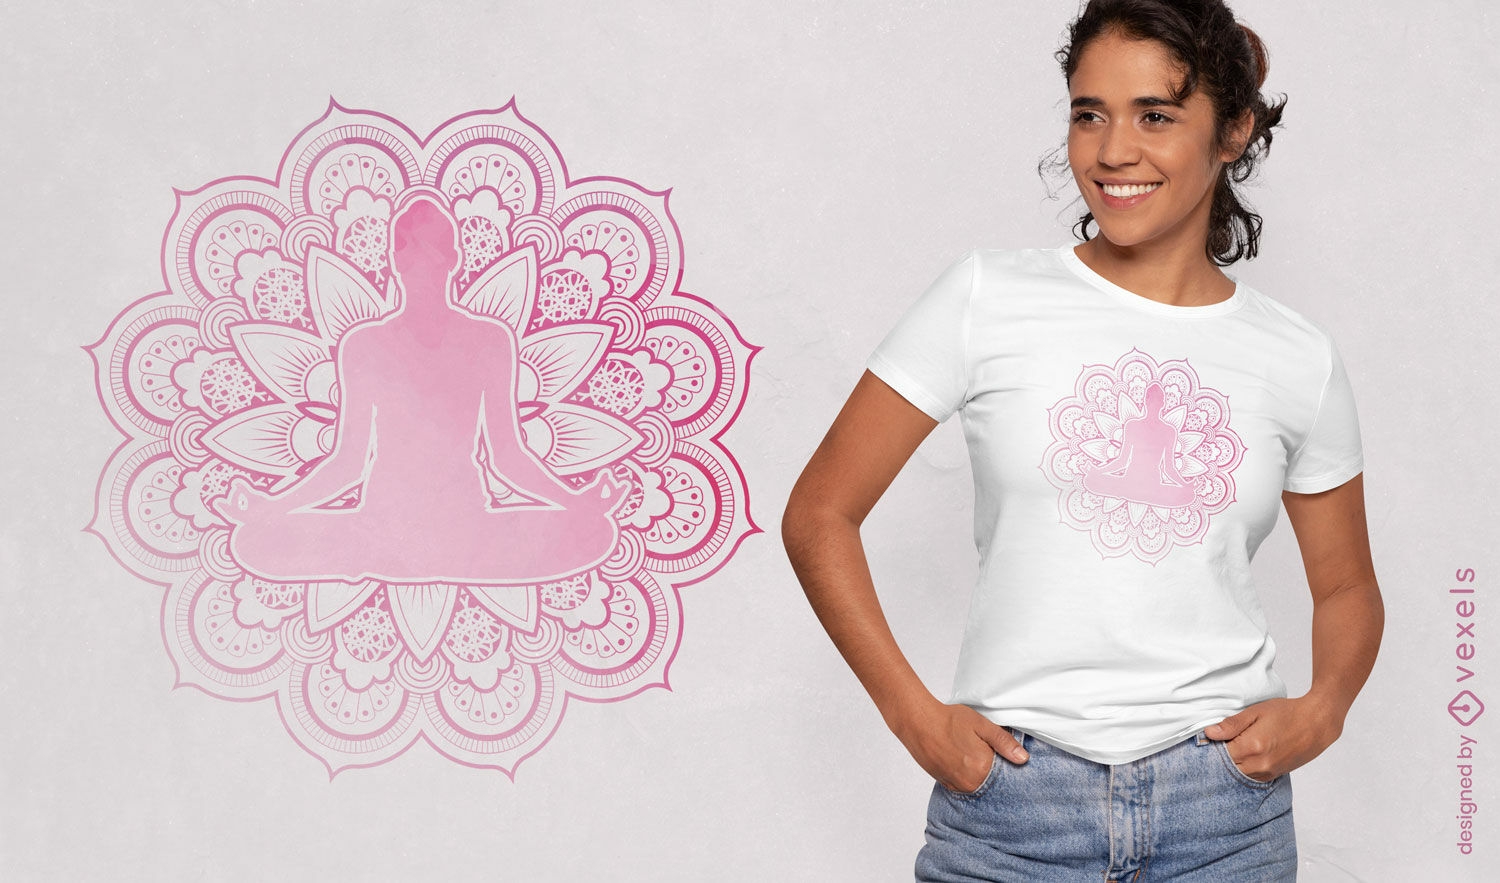 Dise?o de camiseta espiritual de mujer de yoga rosa.